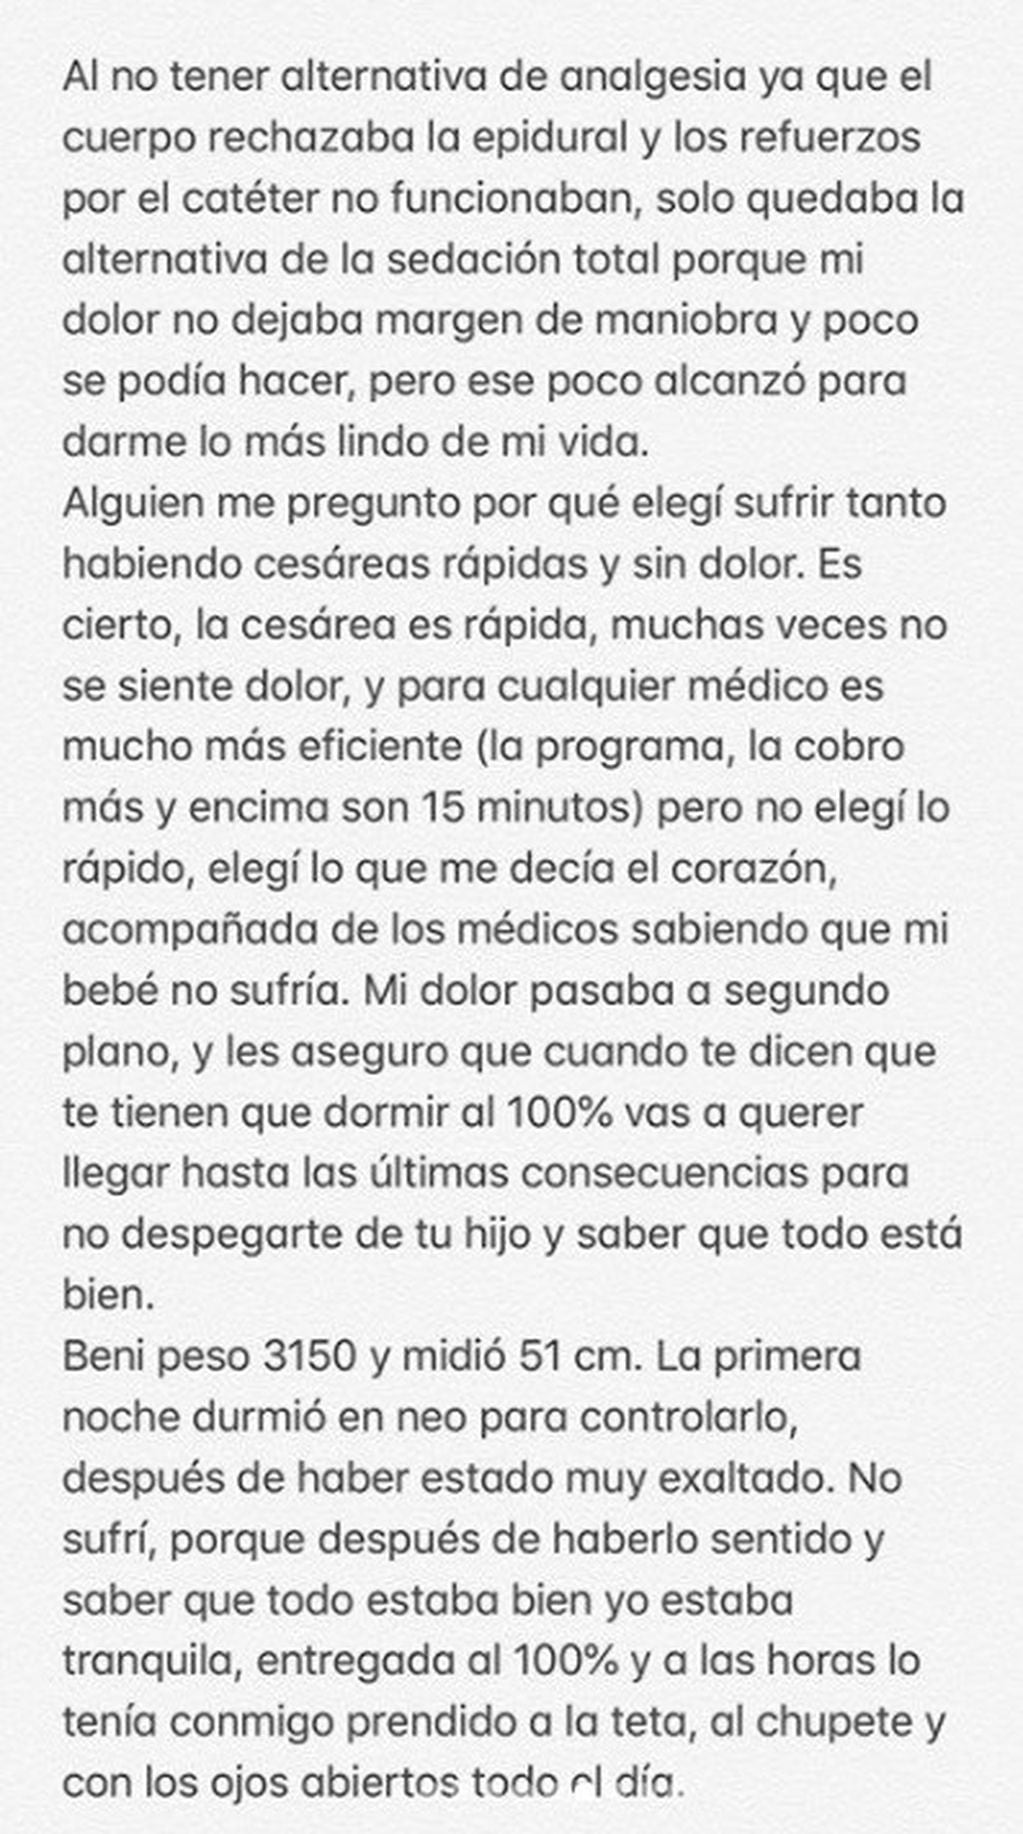 La carta que compartió Bonino a través de su Instagram (4).